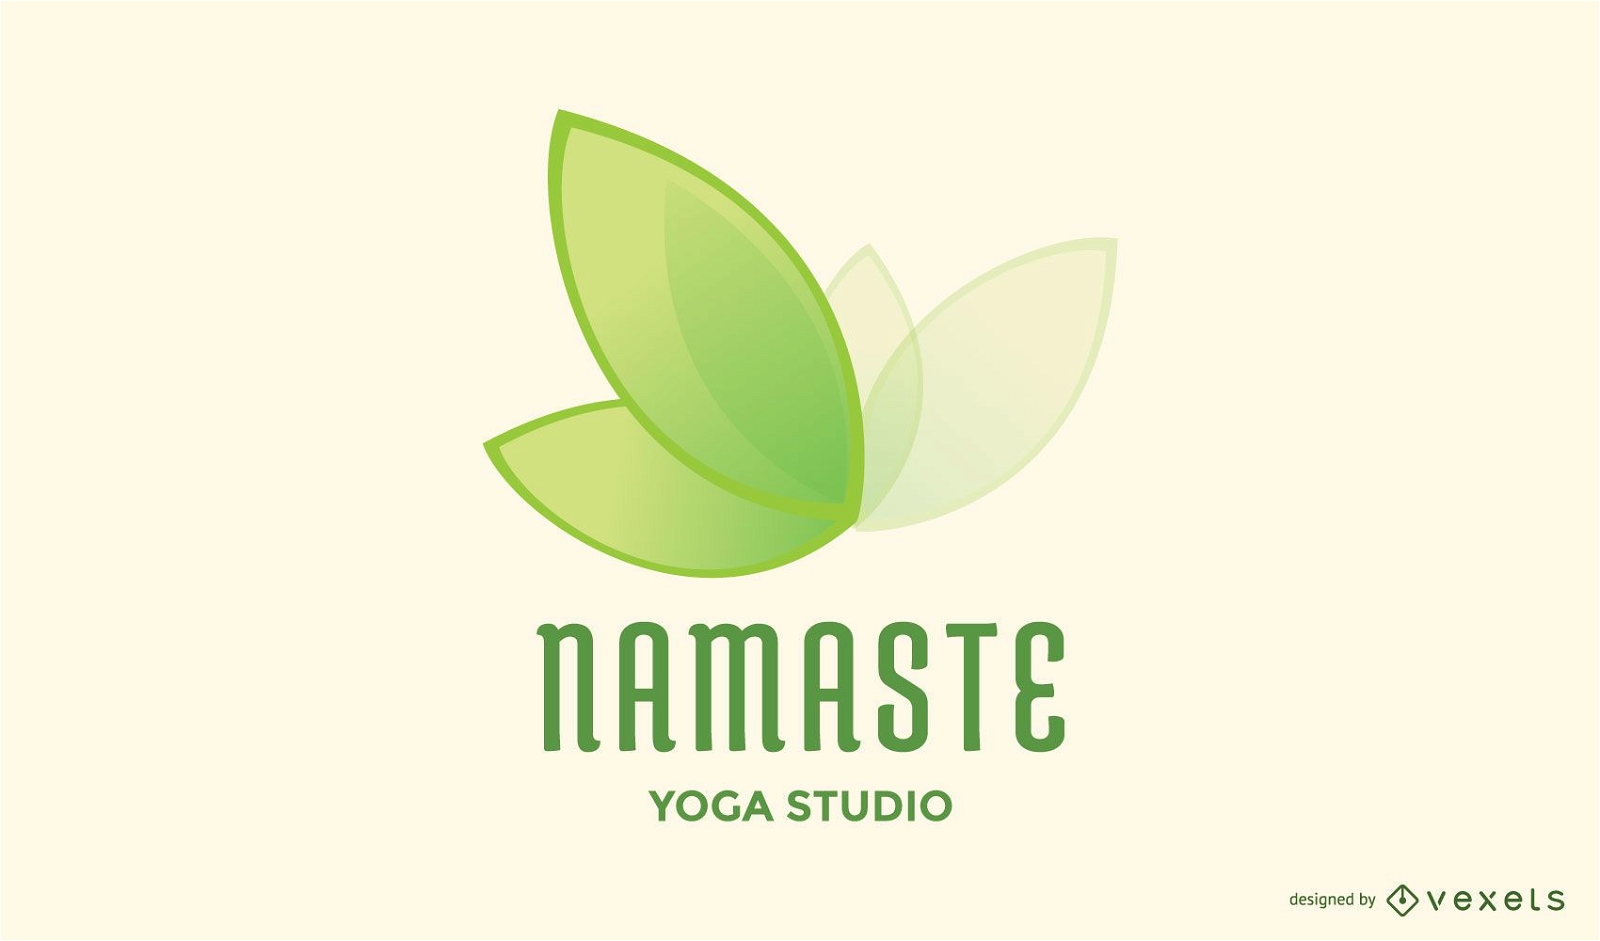 Namaste Yoga Logo Design